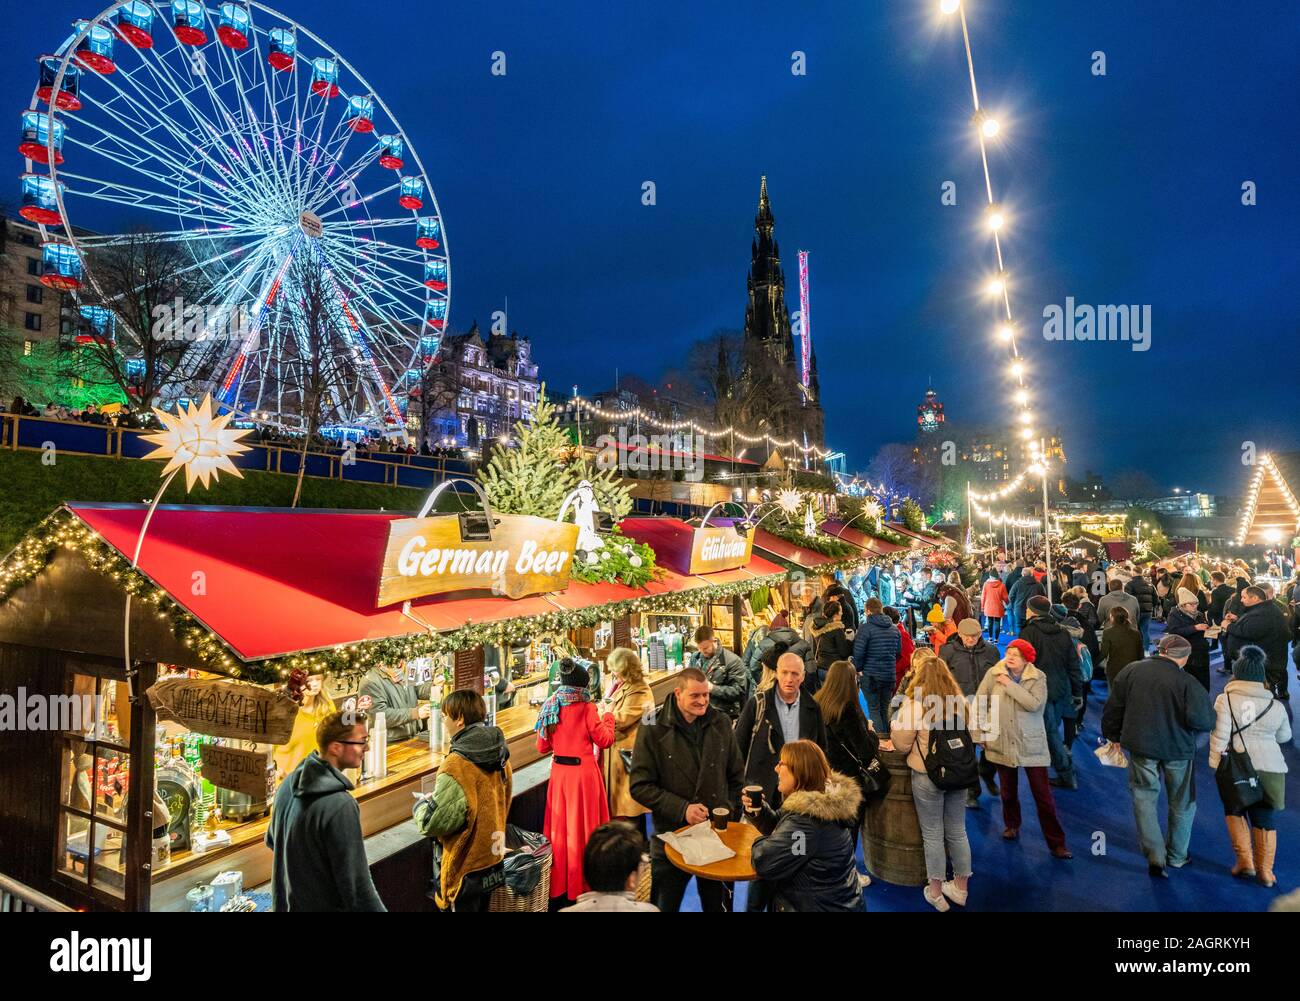 Des foules de gens dans un marché de Noël à Édimbourg West Princes Street Gardens à Édimbourg, Écosse, Royaume-Uni Banque D'Images